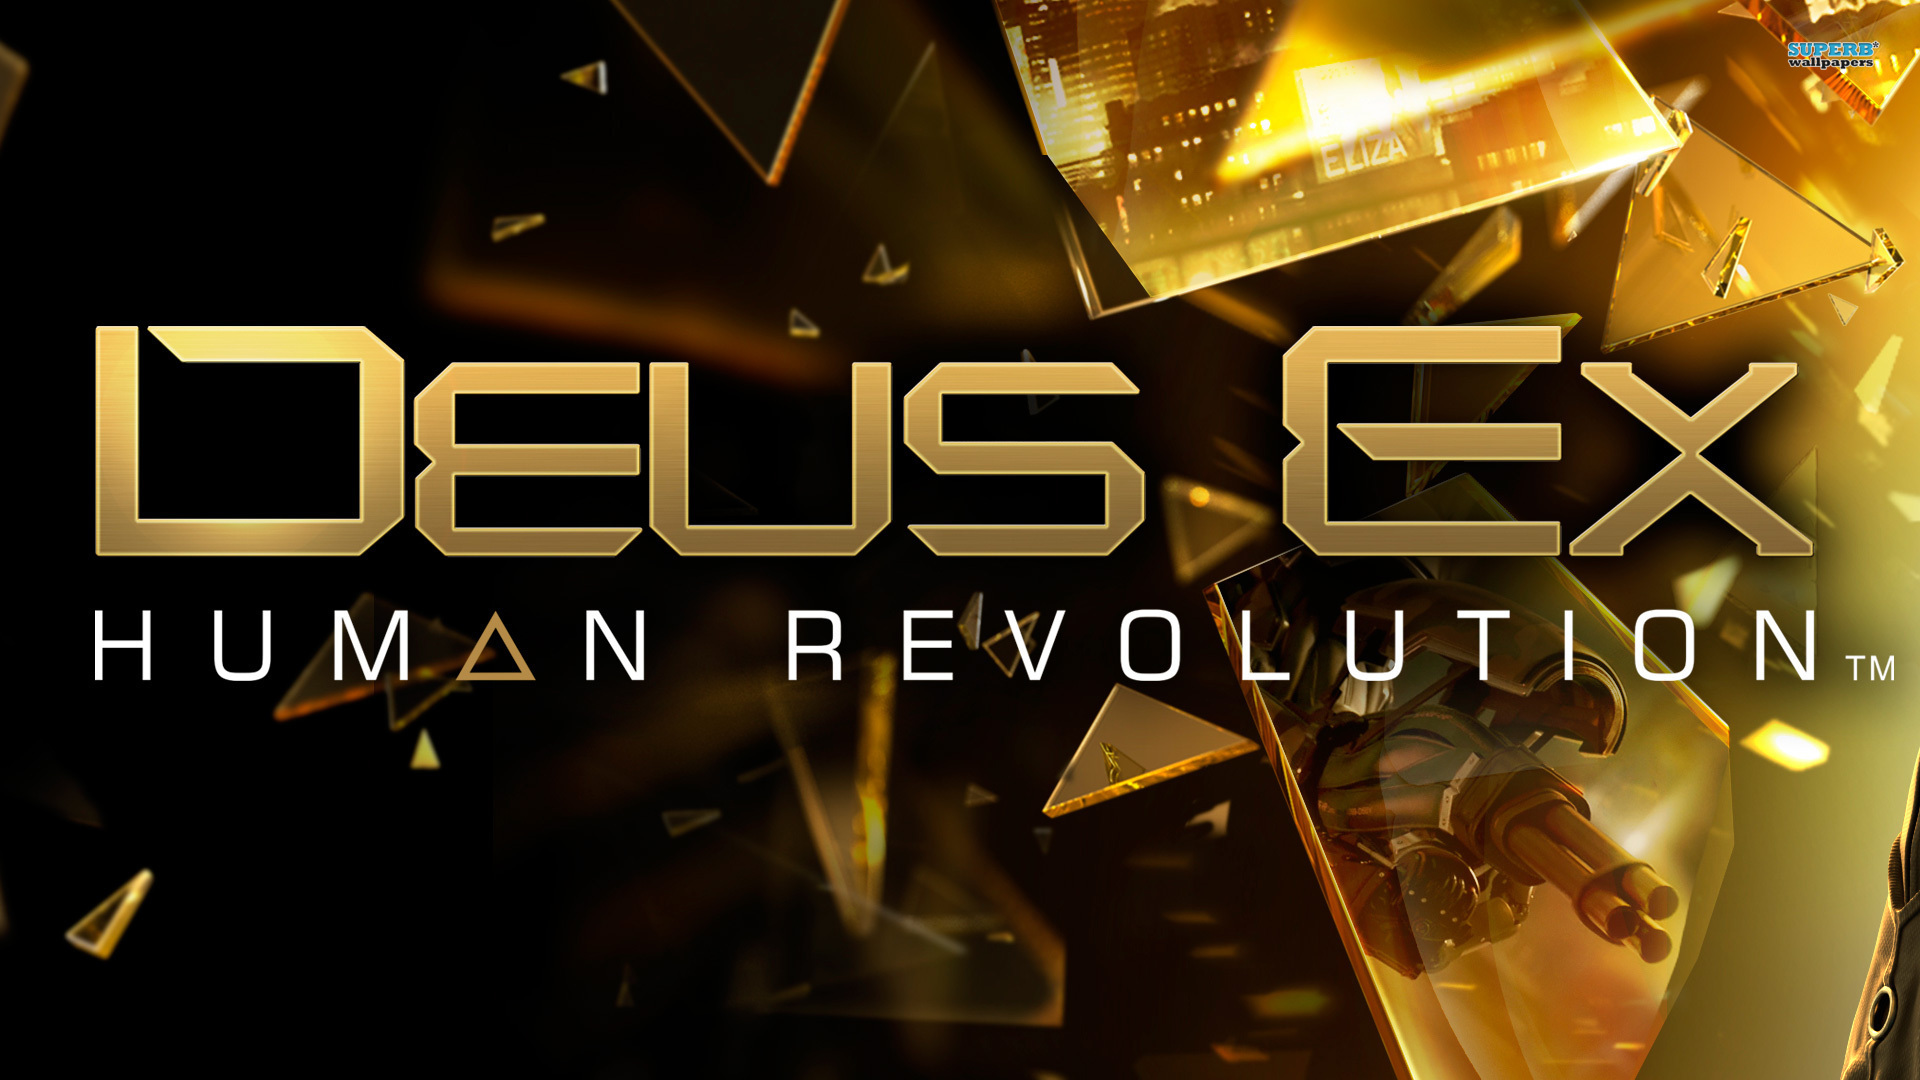 Deus Ex Human Revolution Directors Cut Wallpaper HD Imagebank Biz